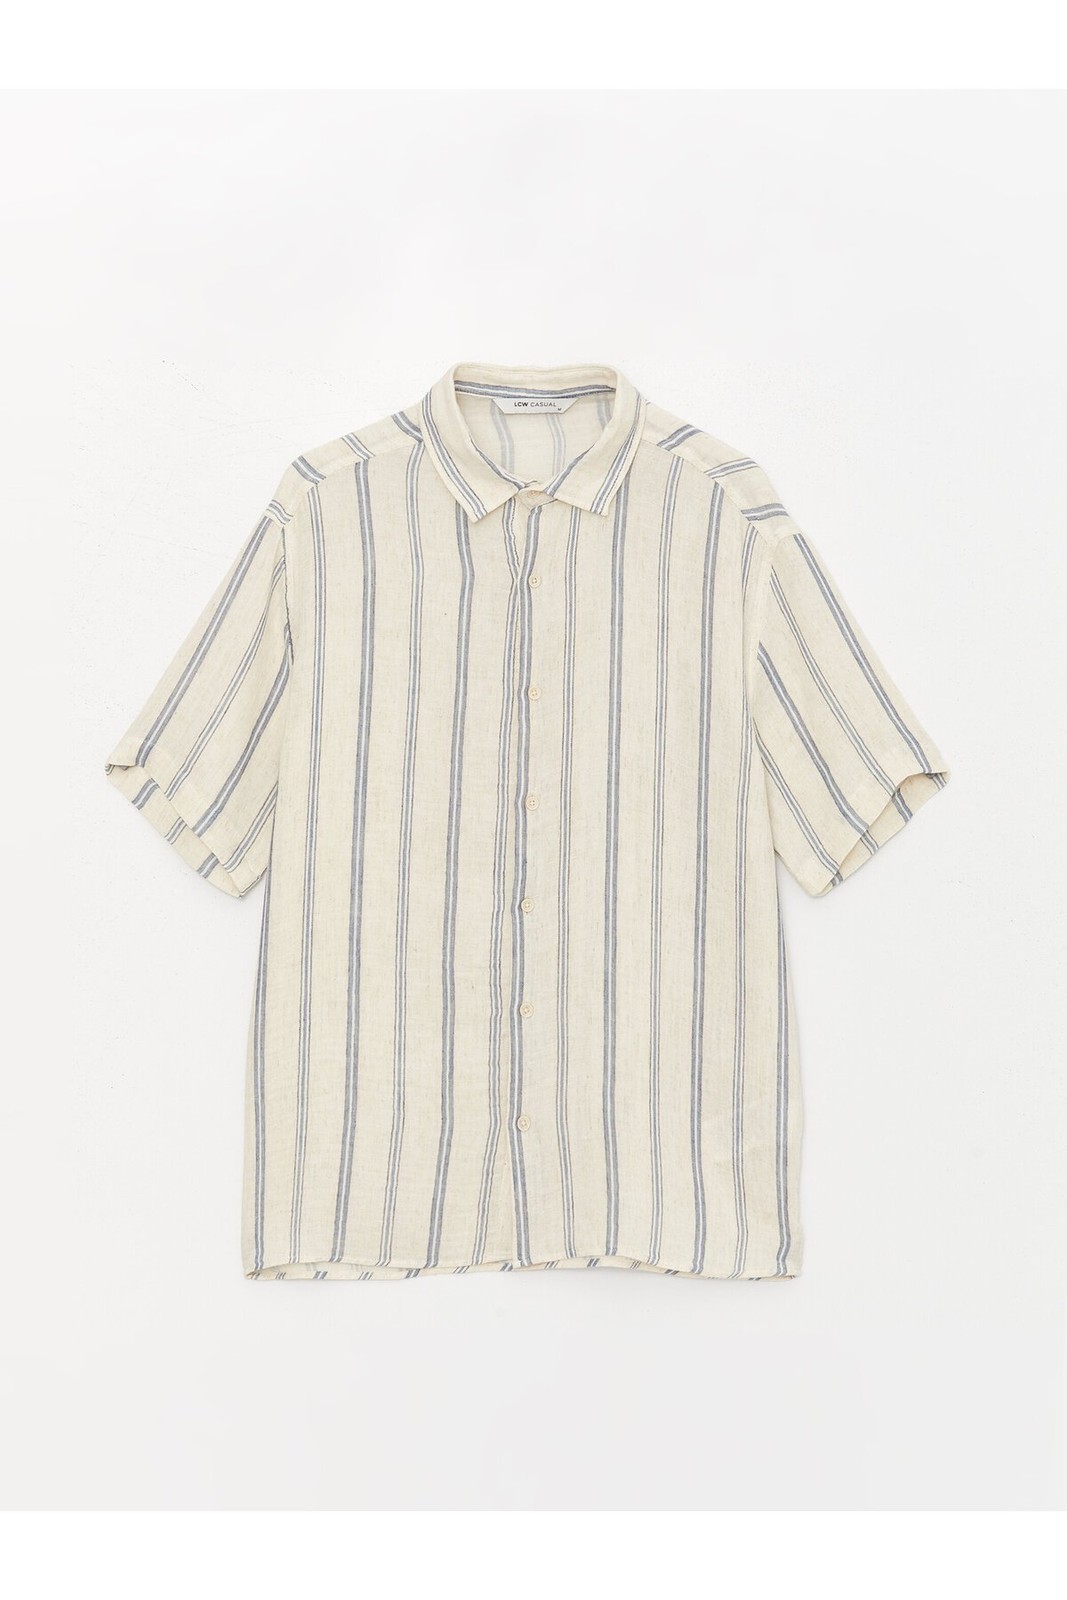 LC Waikiki Men's Regular Fit Short Sleeve Striped Linen Blend Shirt